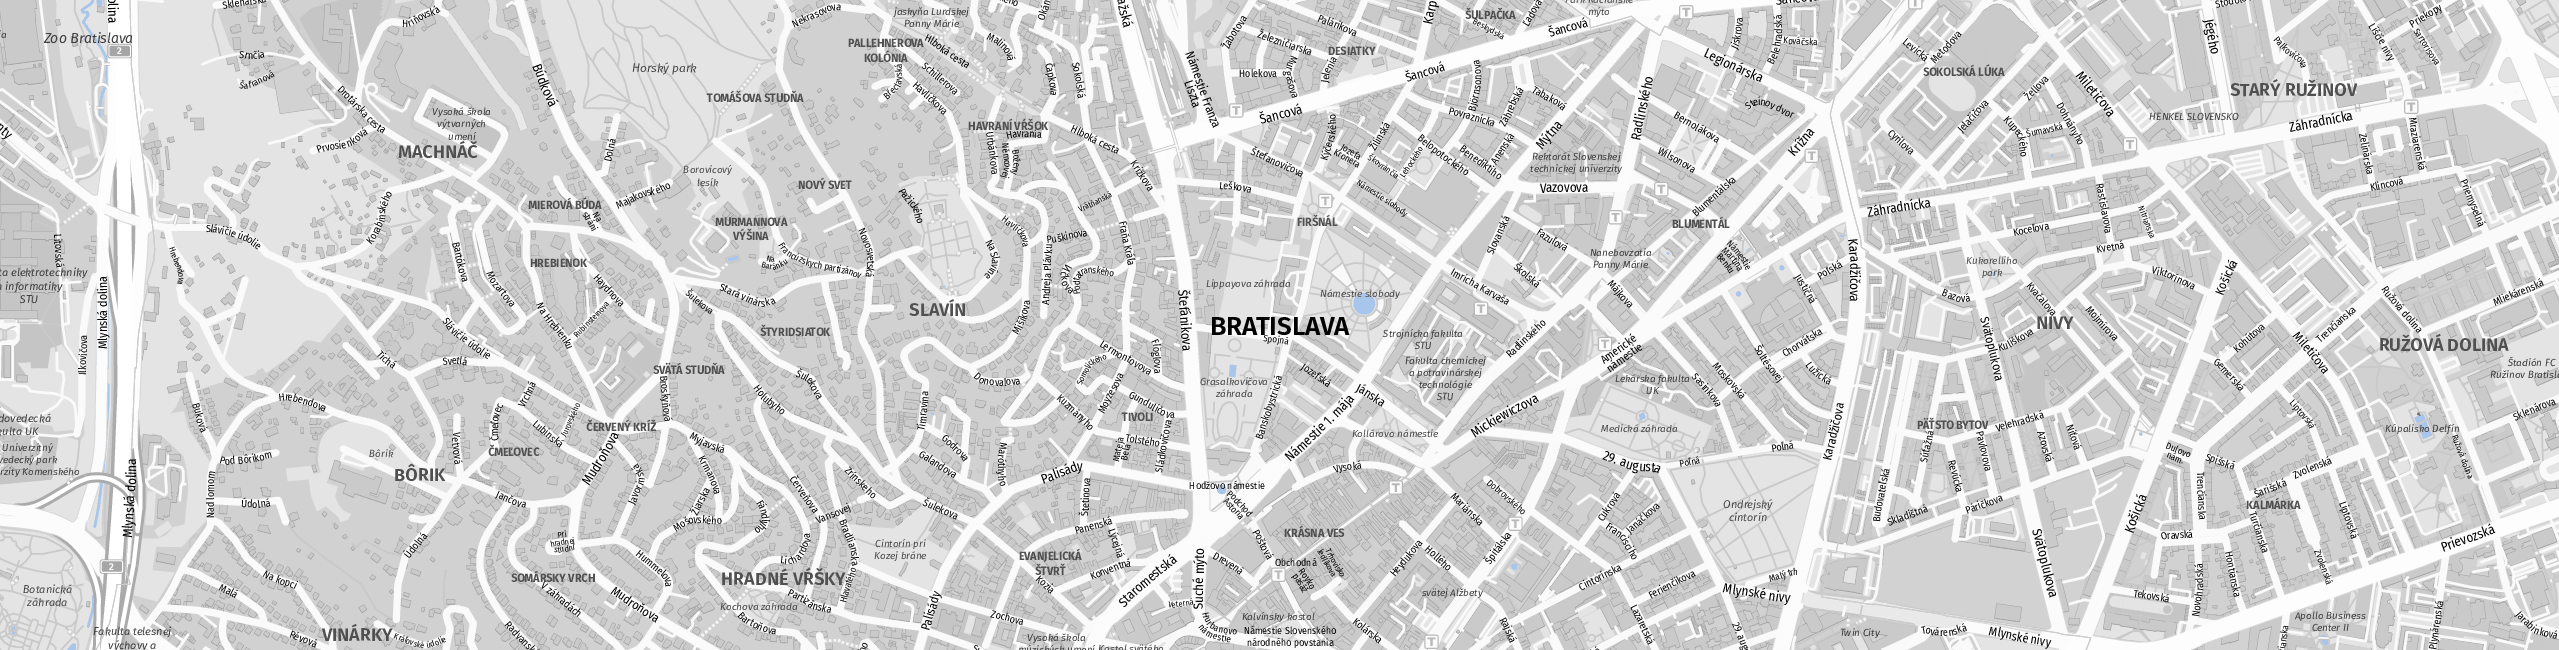 Stadtplan Bratislava zum Downloaden.